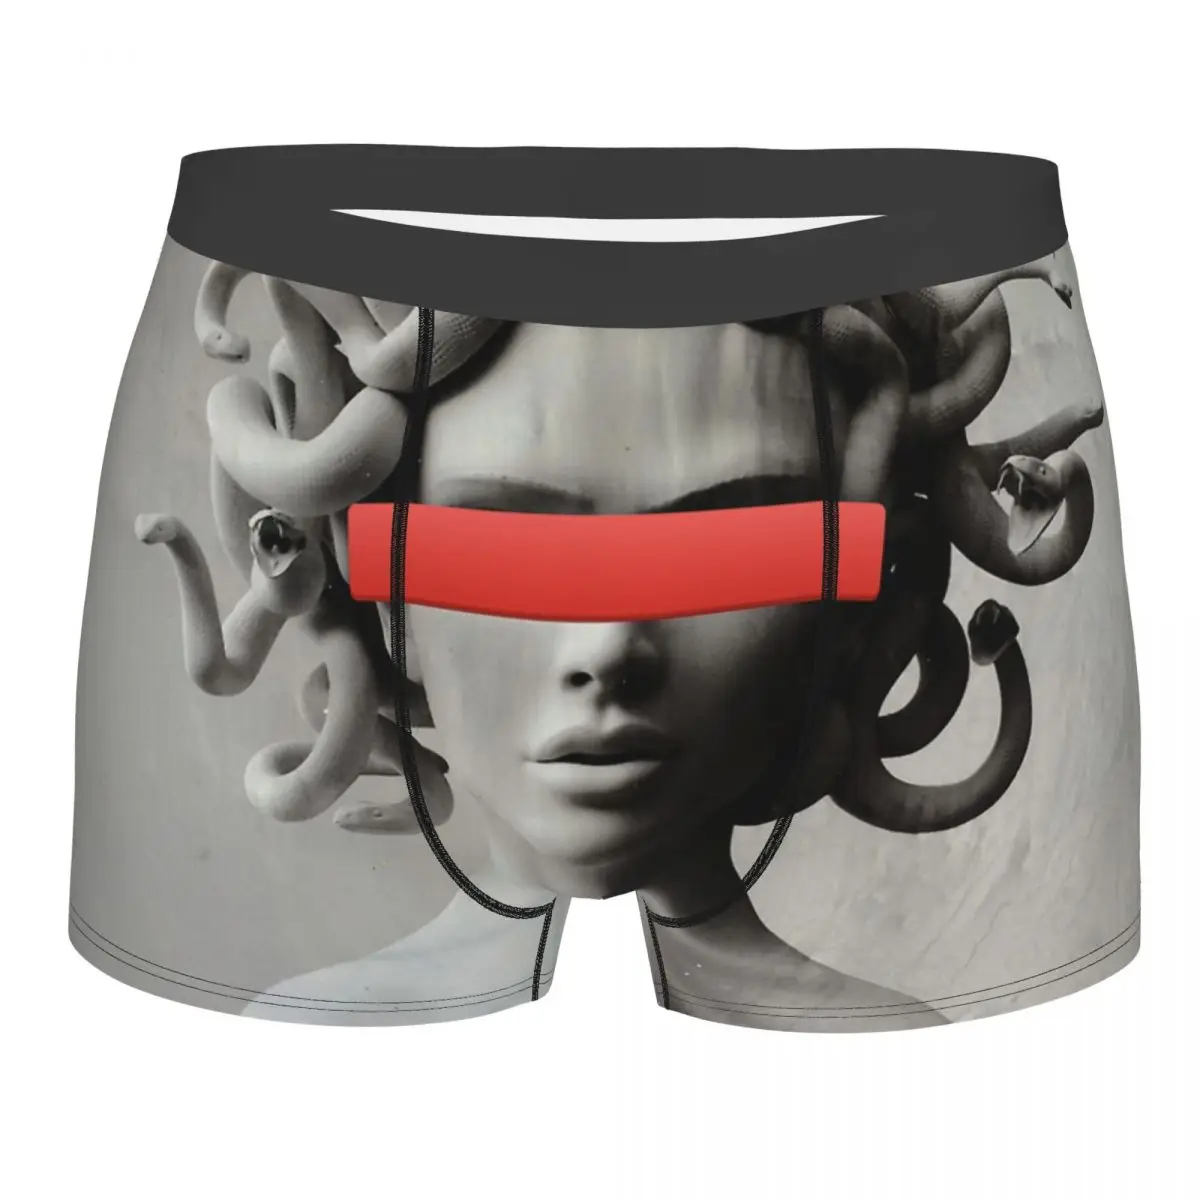 Medusa Underpants Cotton Panties Men's Underwear Ventilate Shorts